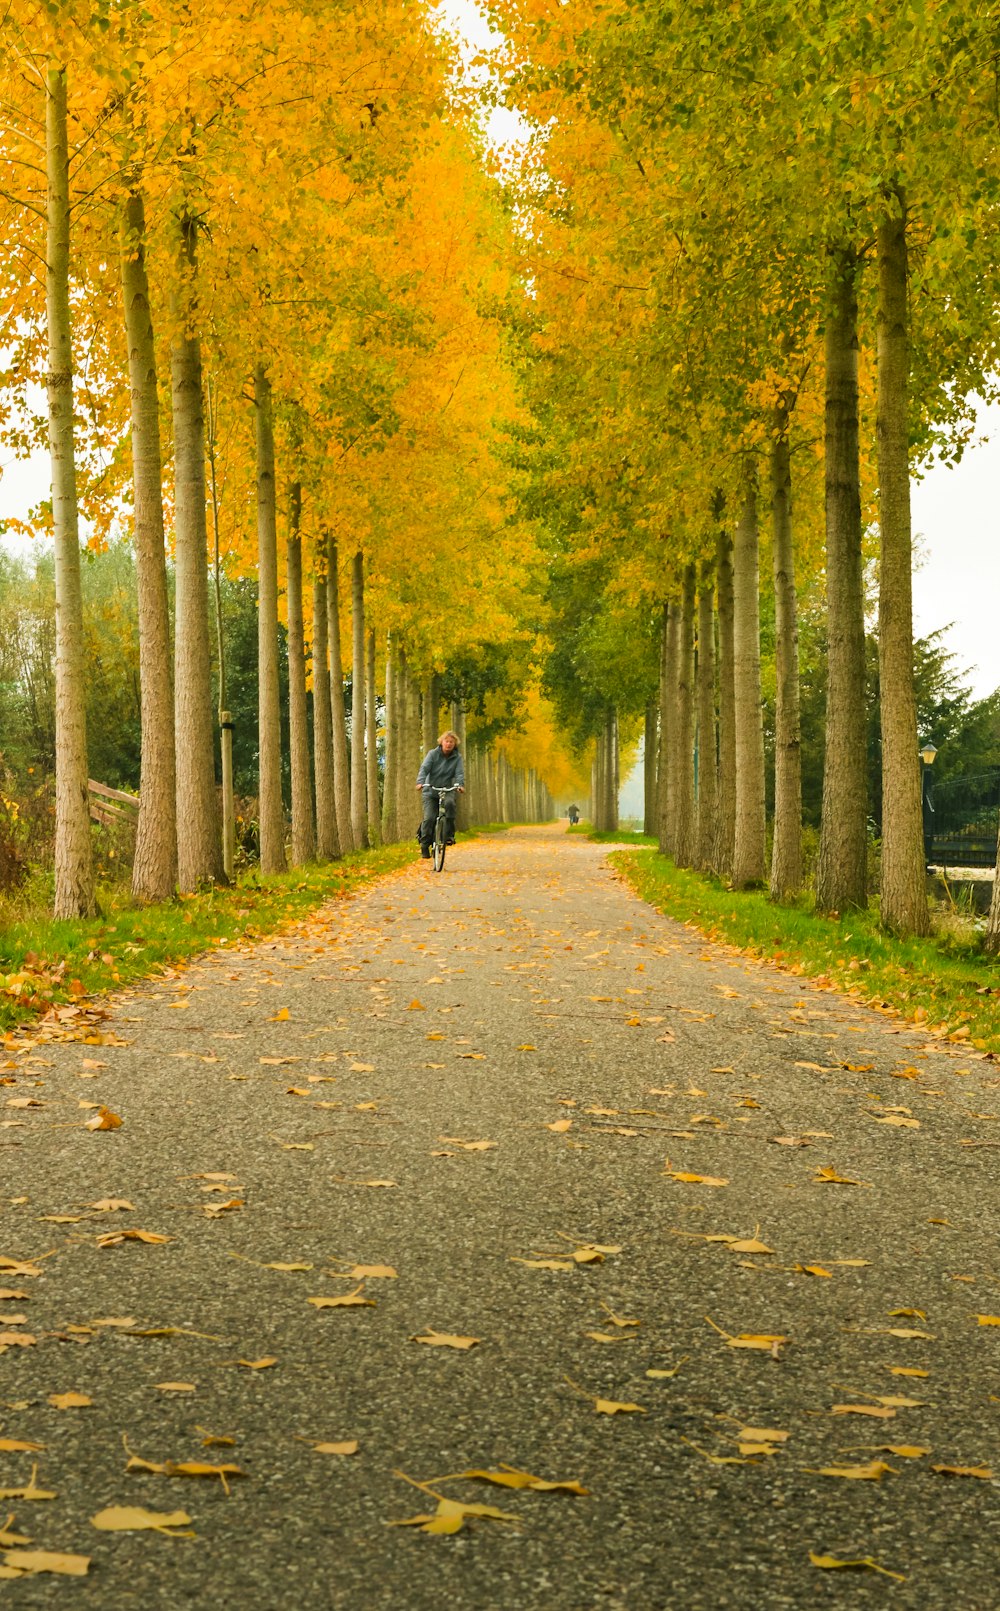 검은 재킷을 입은 사람이 낮에 푸른 나무 사이의 회색 통로를 걷고 있다